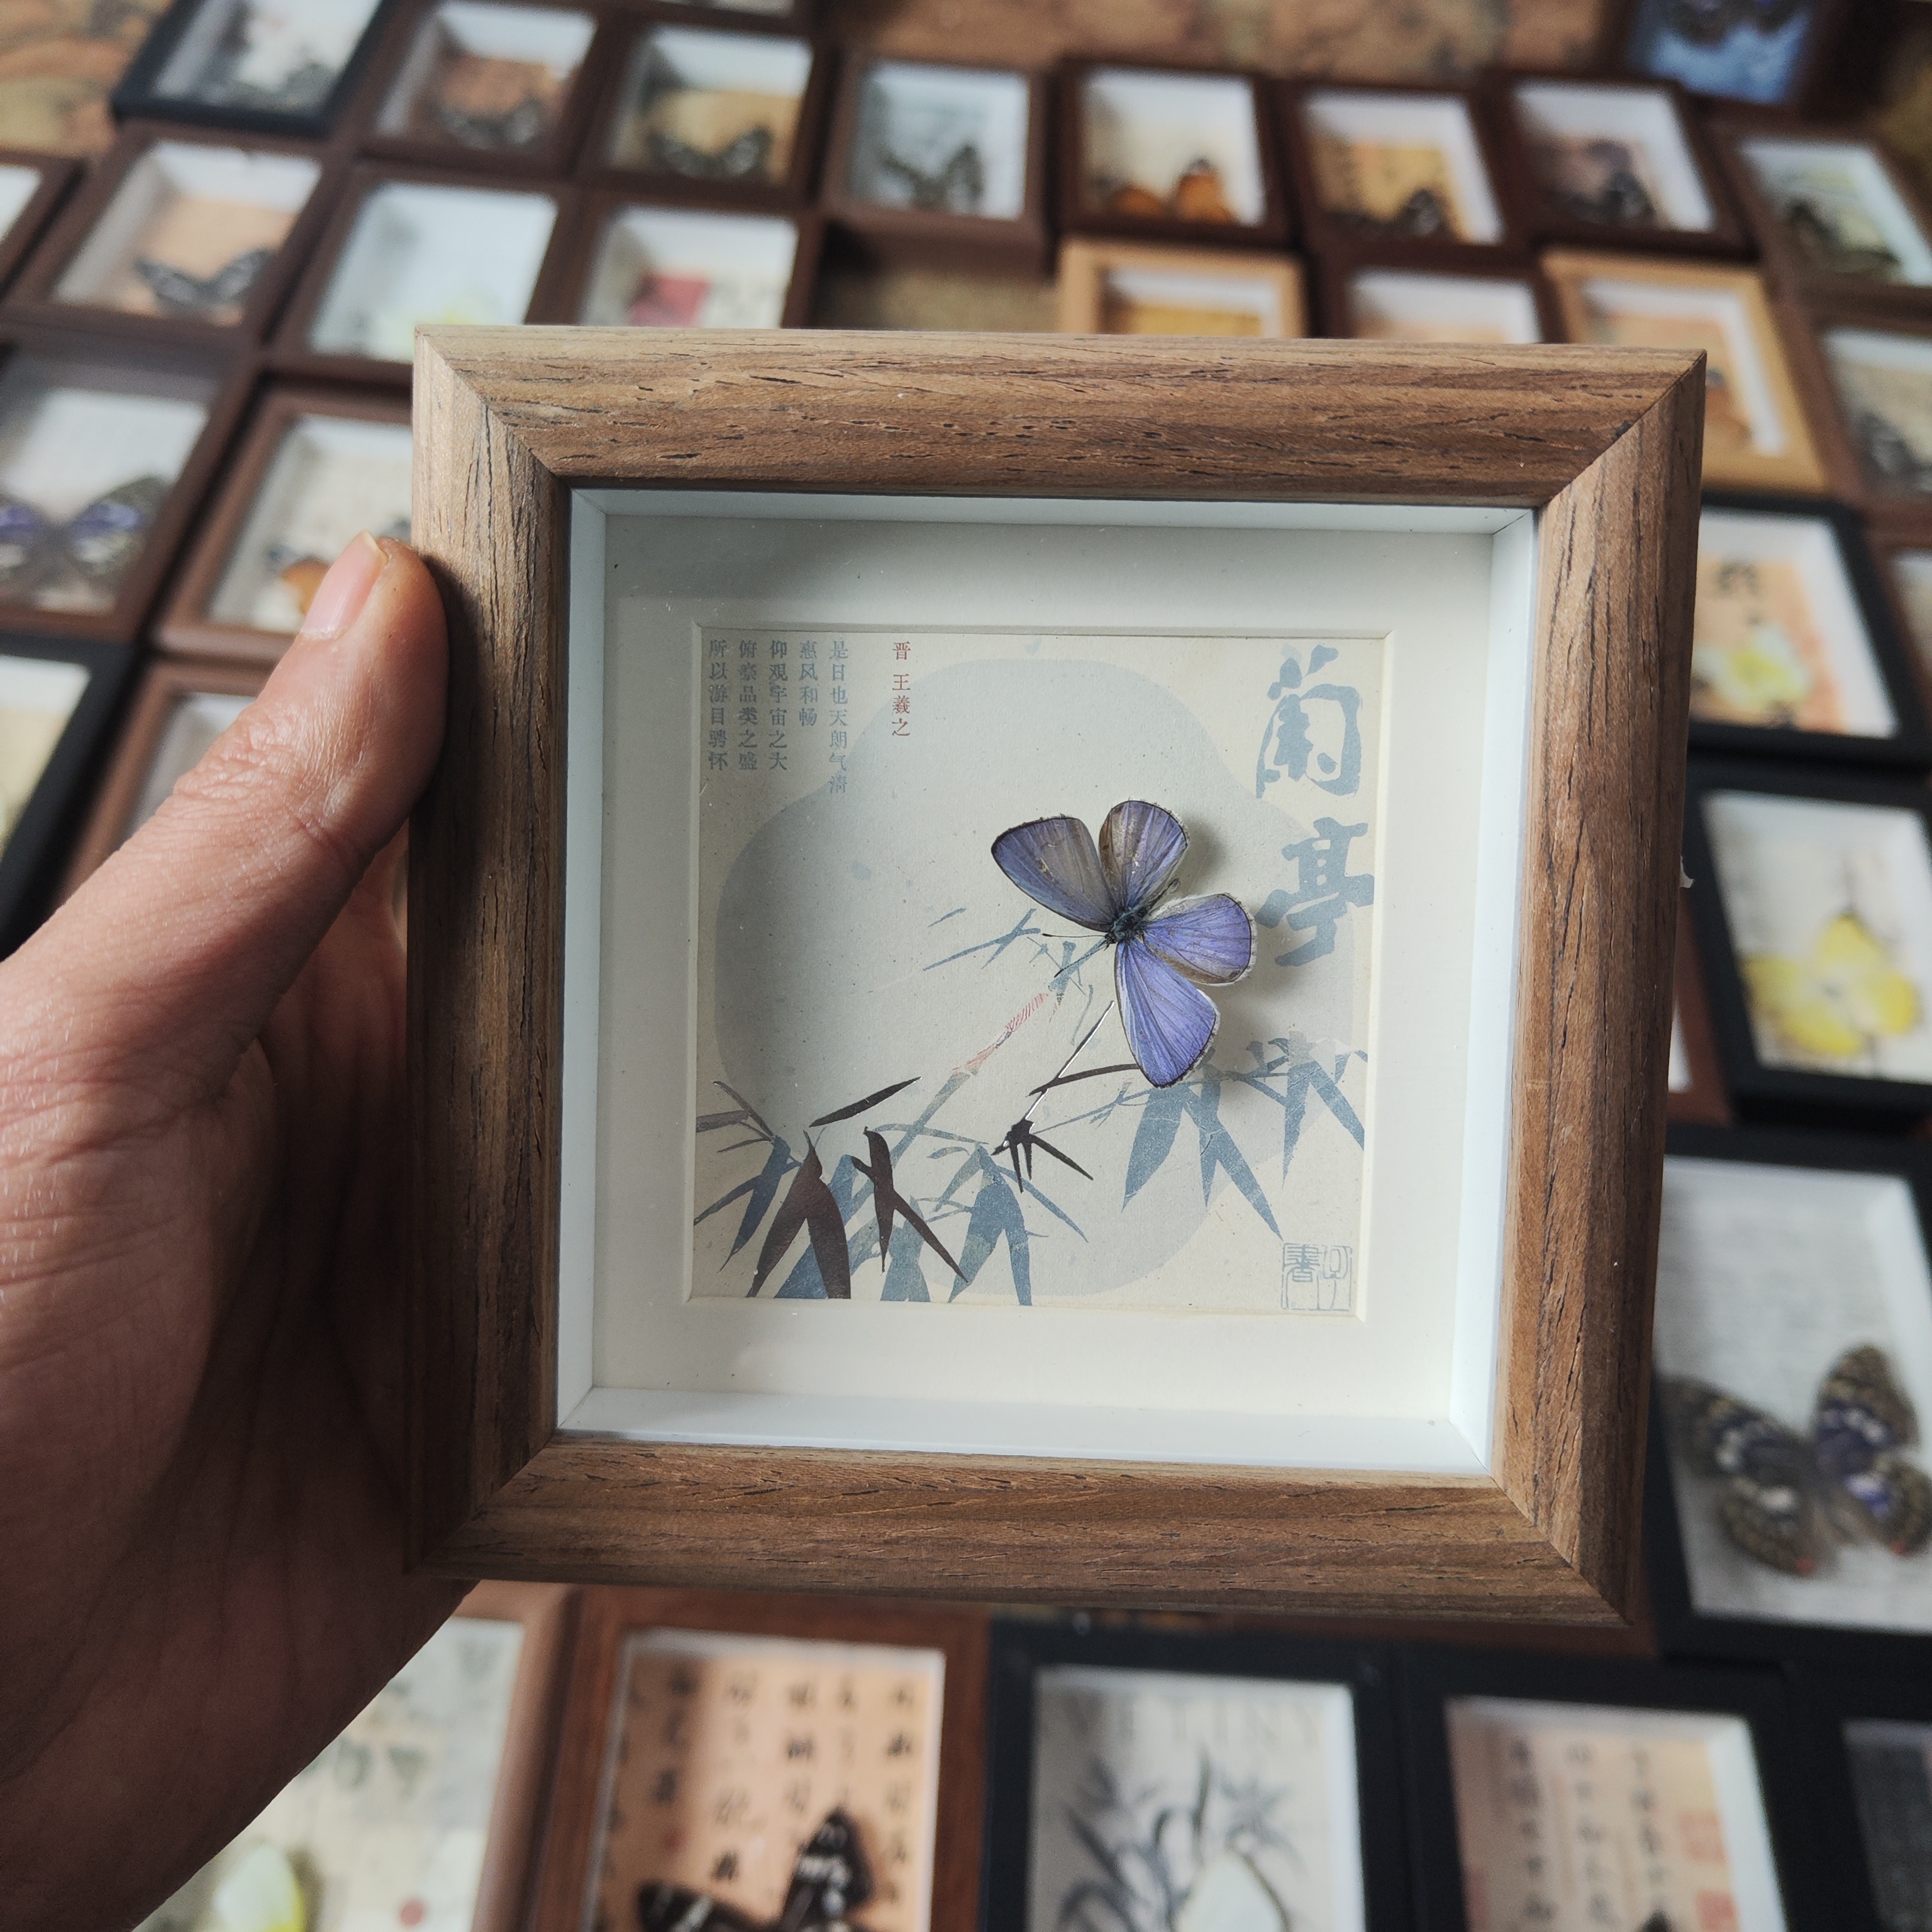 蝴蝶标本相框真蝴蝶摆件礼物生日幼儿园展示框挂画小兰蝶摄影昆虫